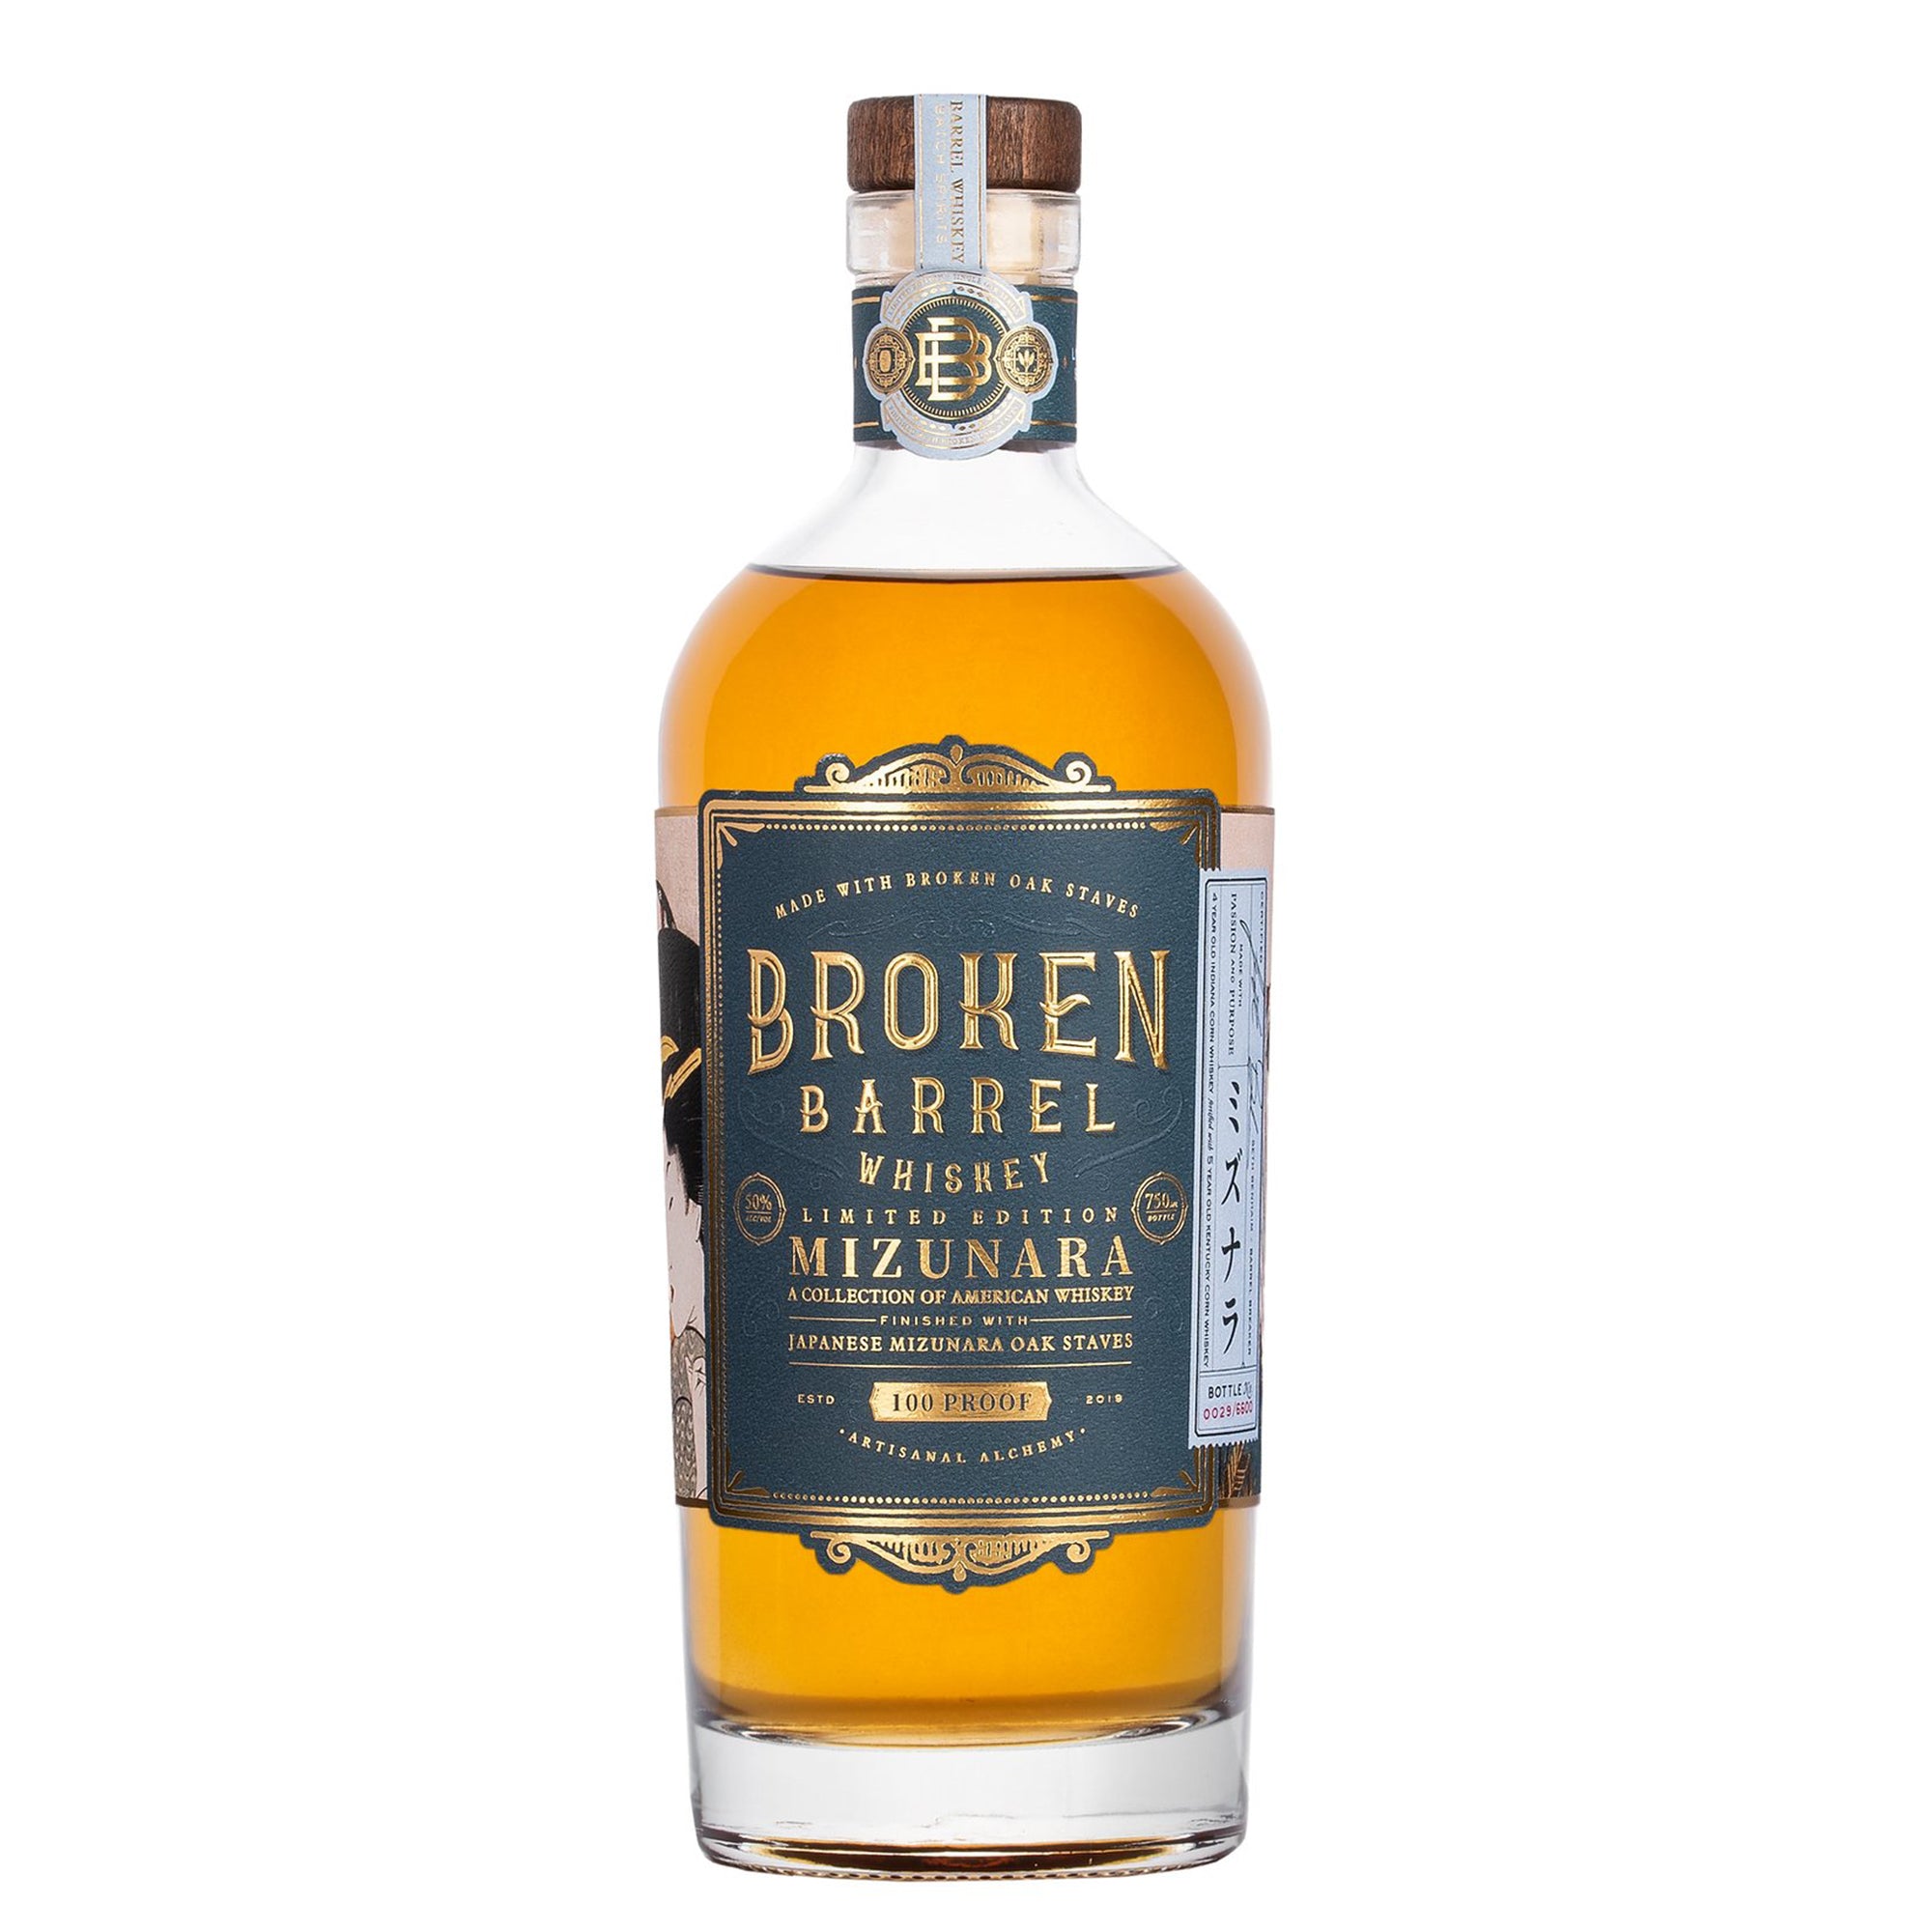 Broken Barrel Mizunara Whiskey (Limited Edition)